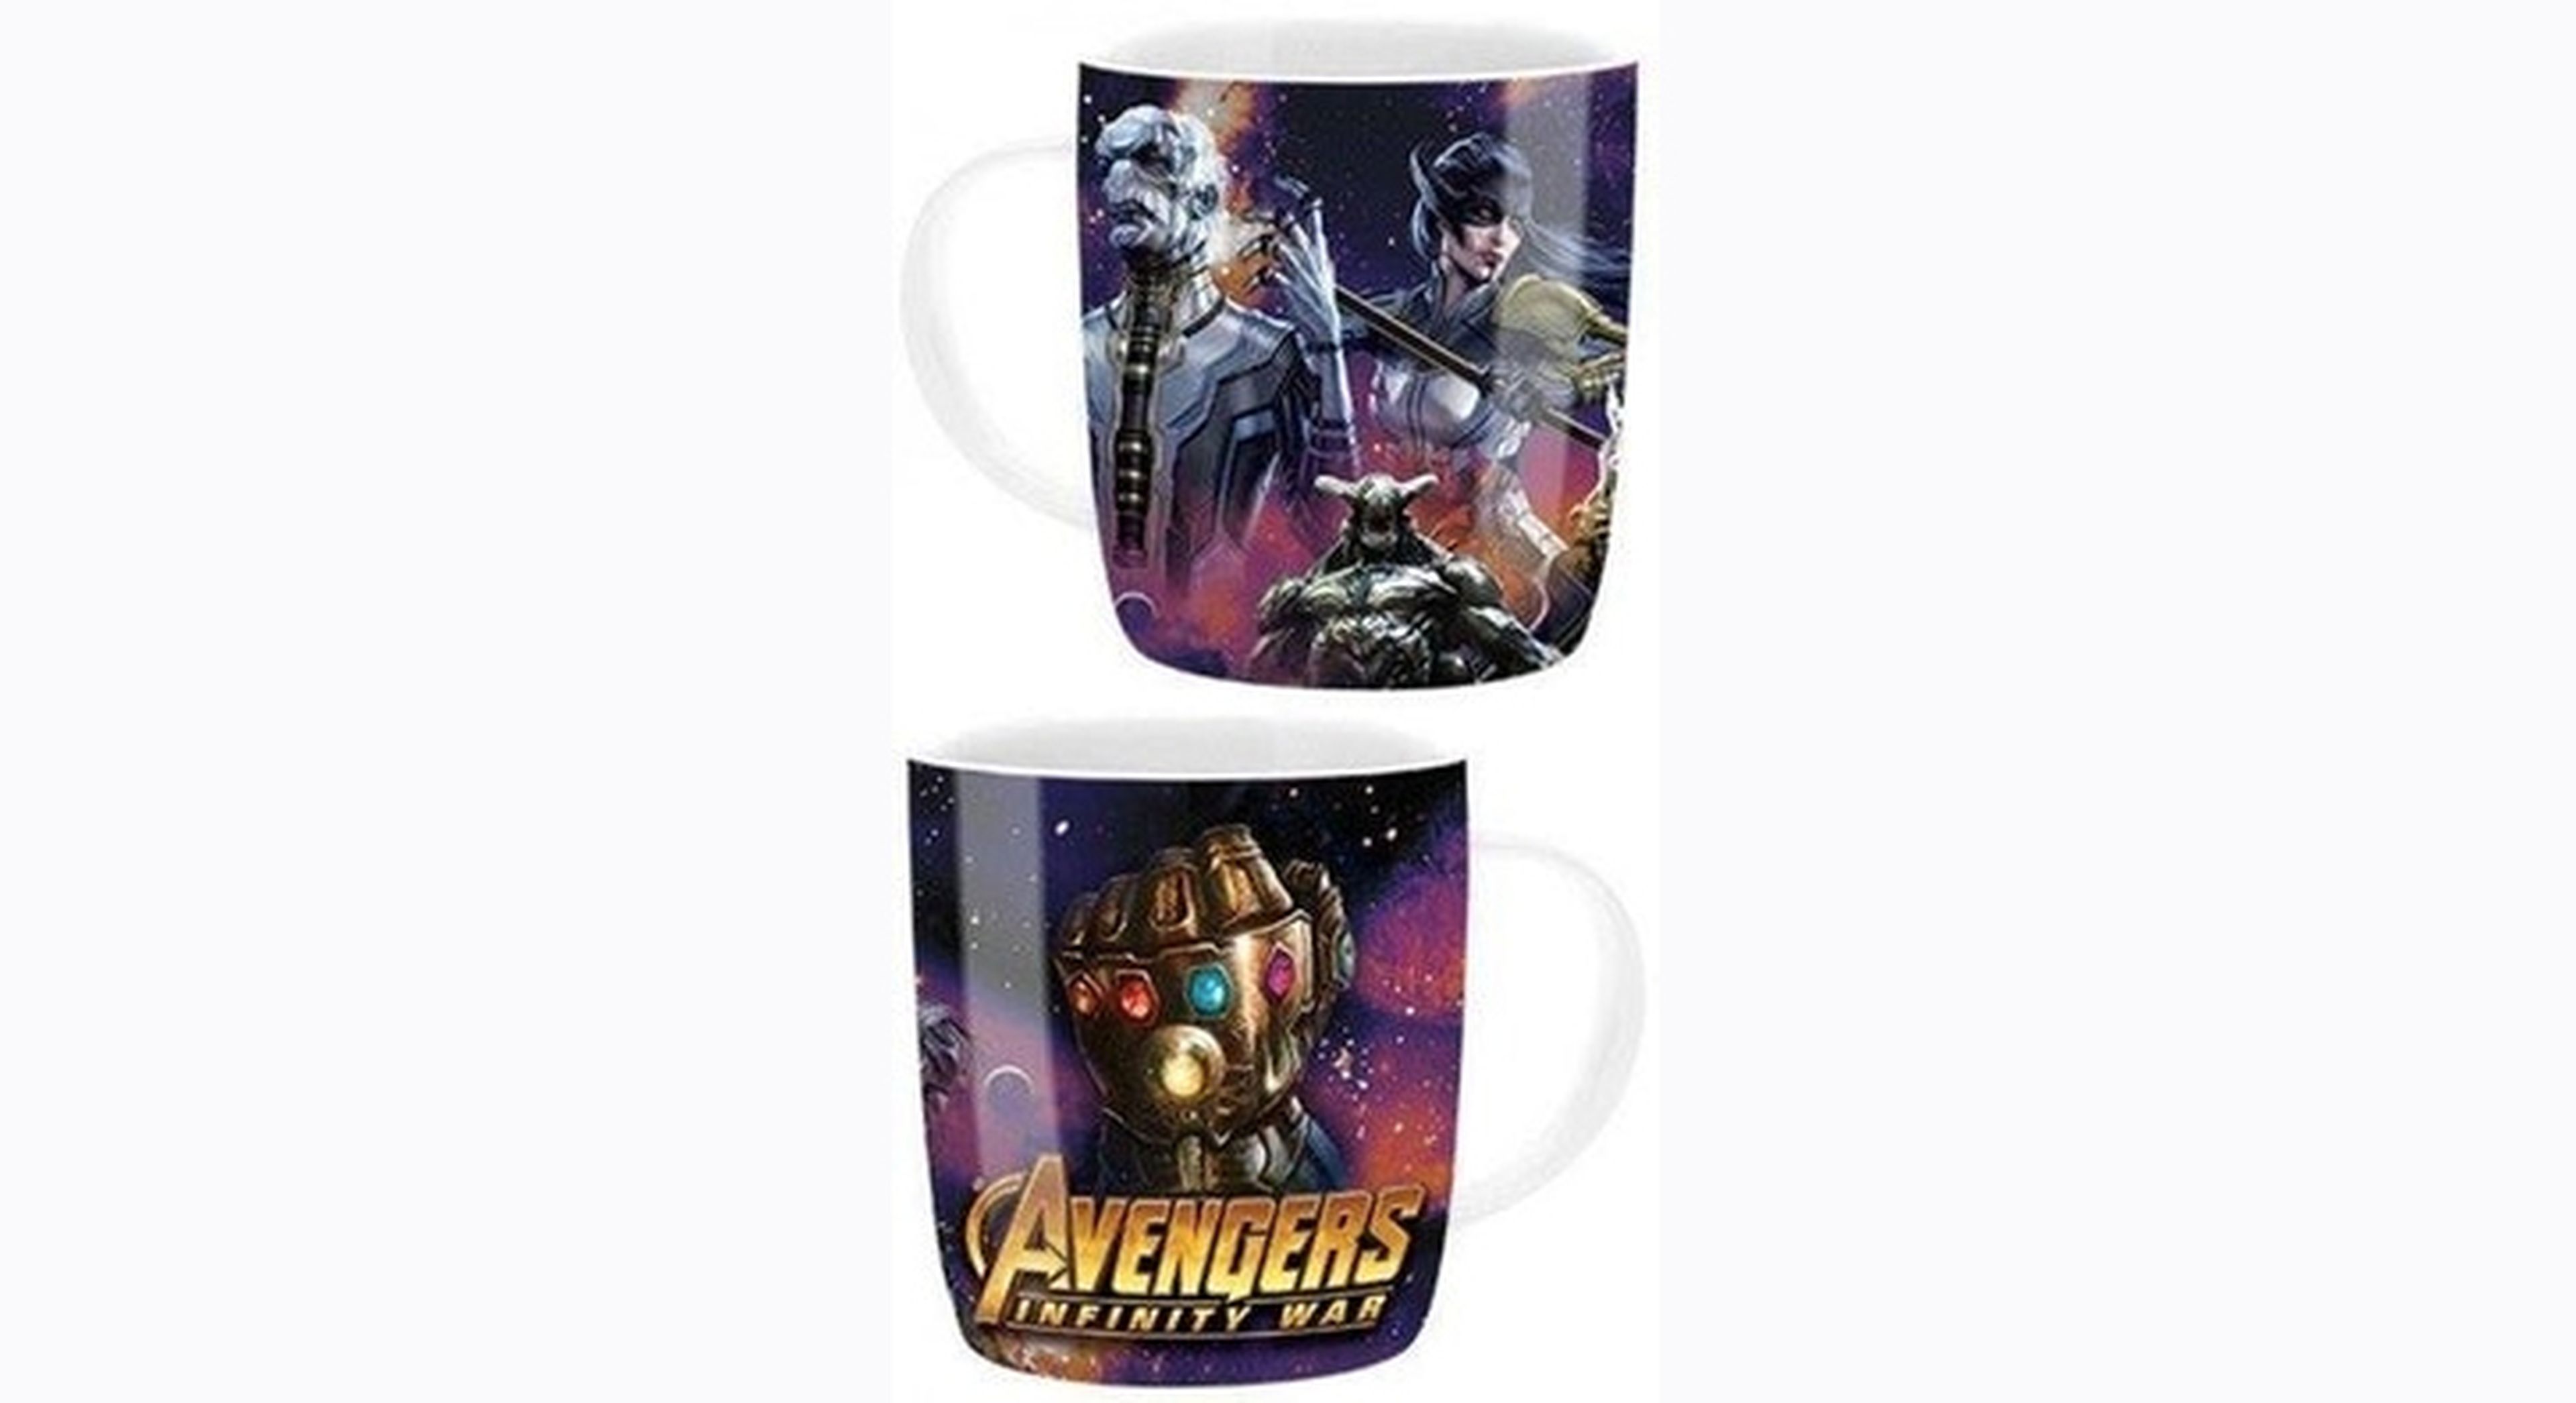 Vengadores: infinity War merchandising